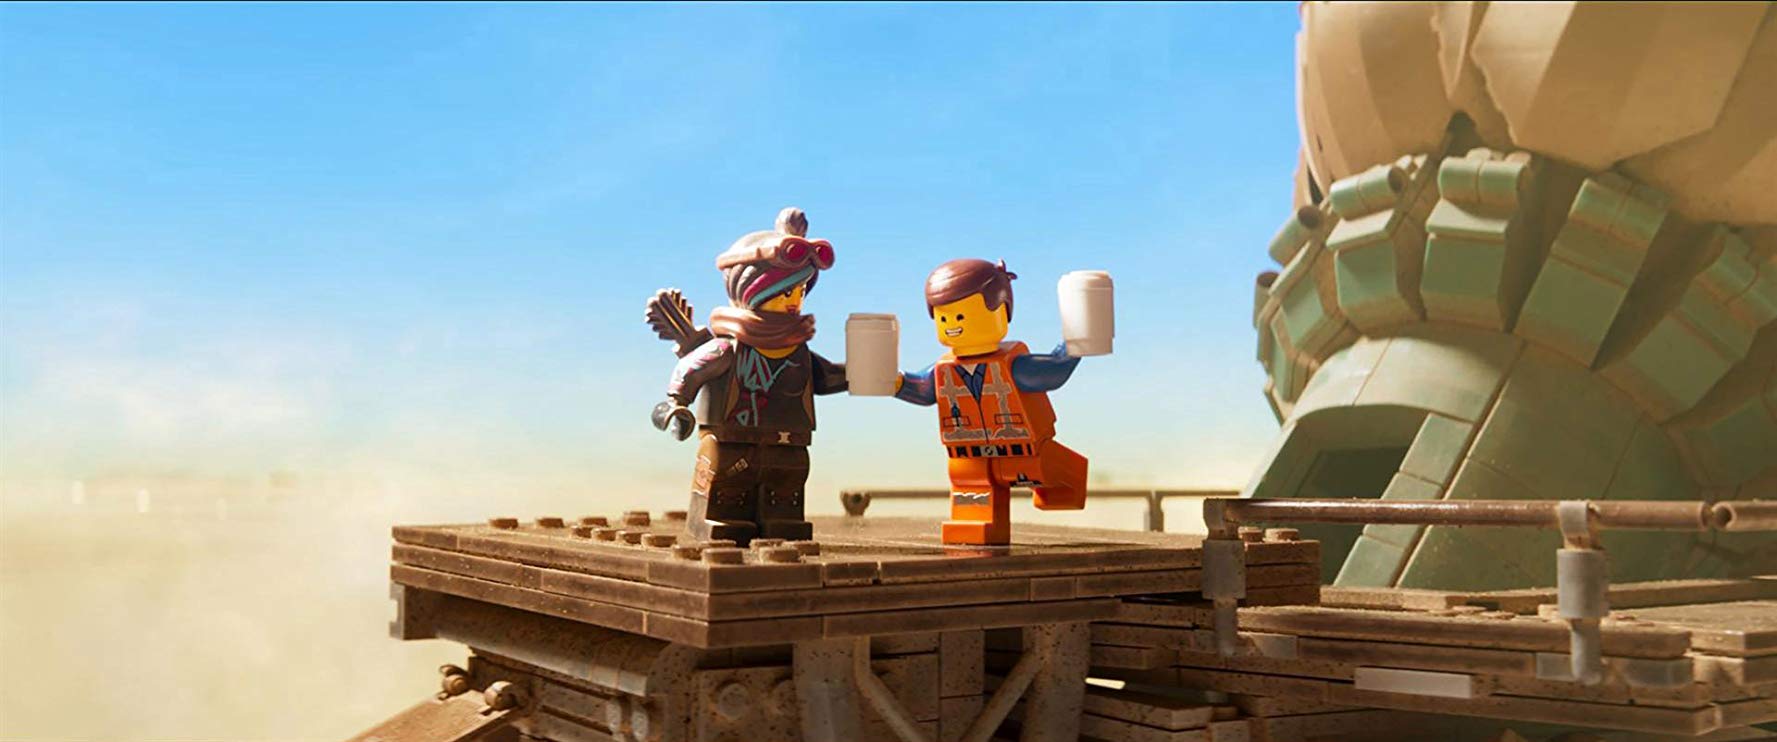 Lato w mieście: LEGO® PRZYGODA 2 - dubbing